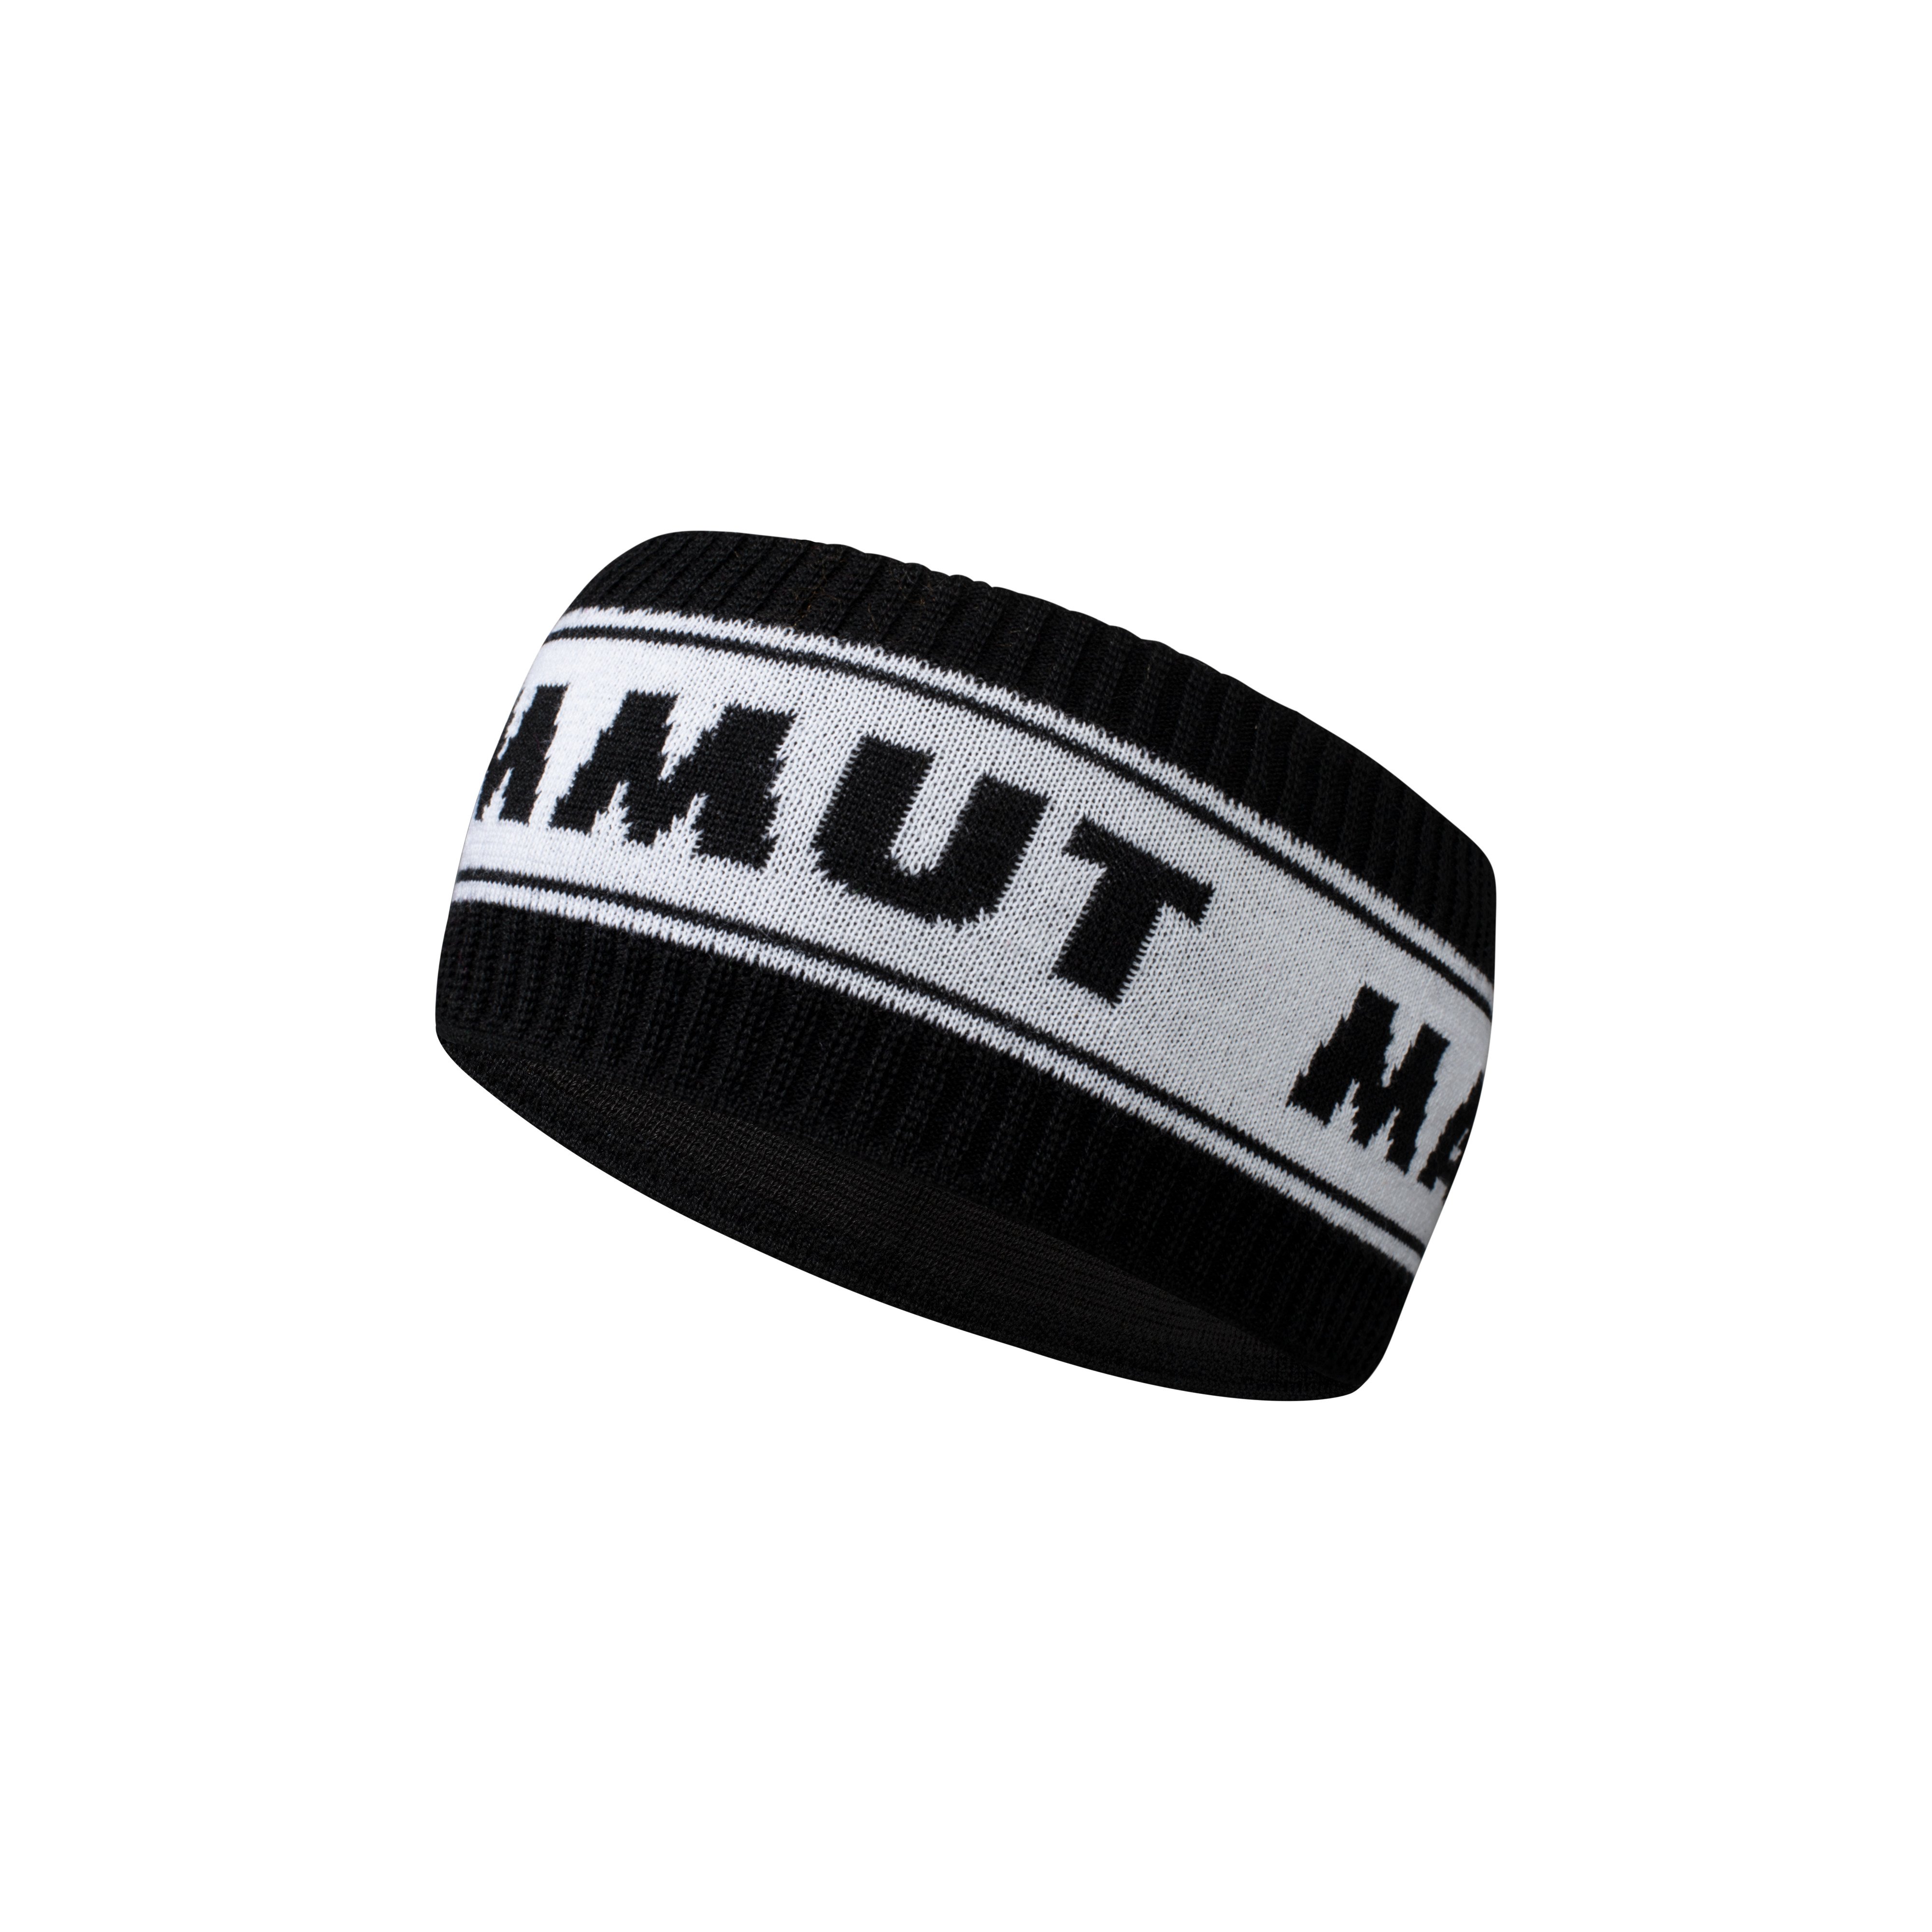 Peaks Headband - black-white, one size product image